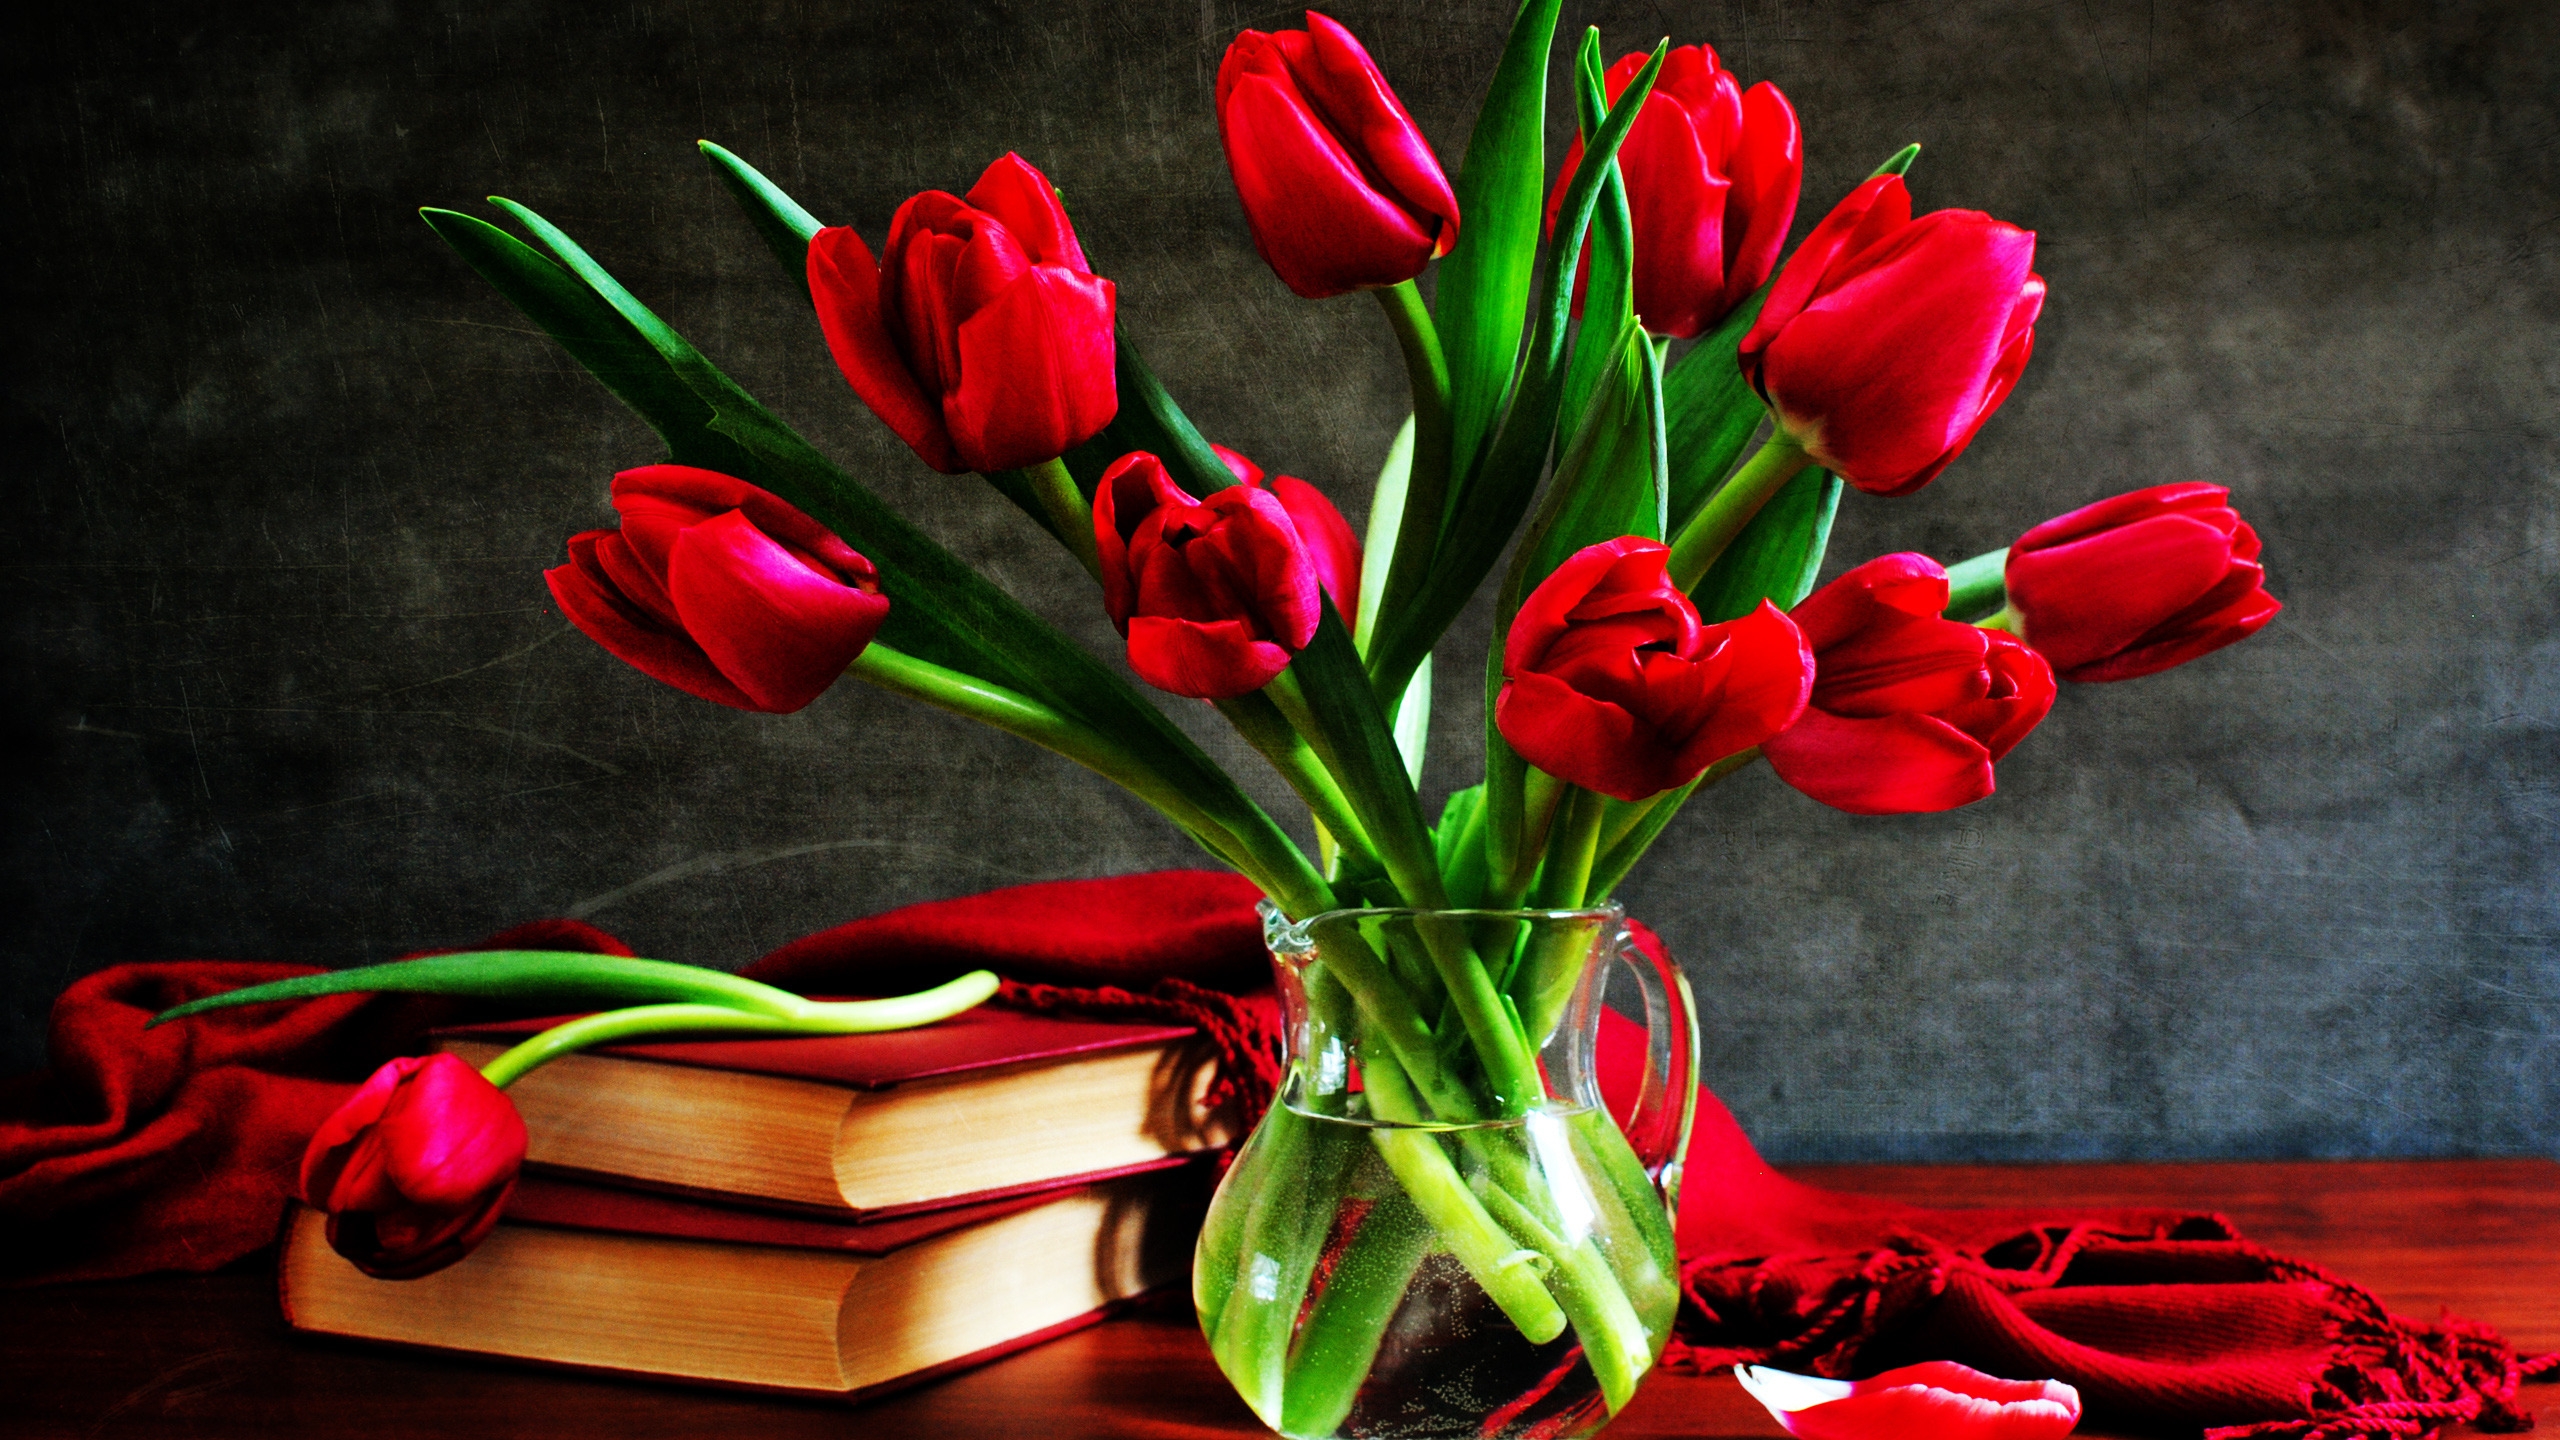 Tulips Vase for 2560x1440 HDTV resolution